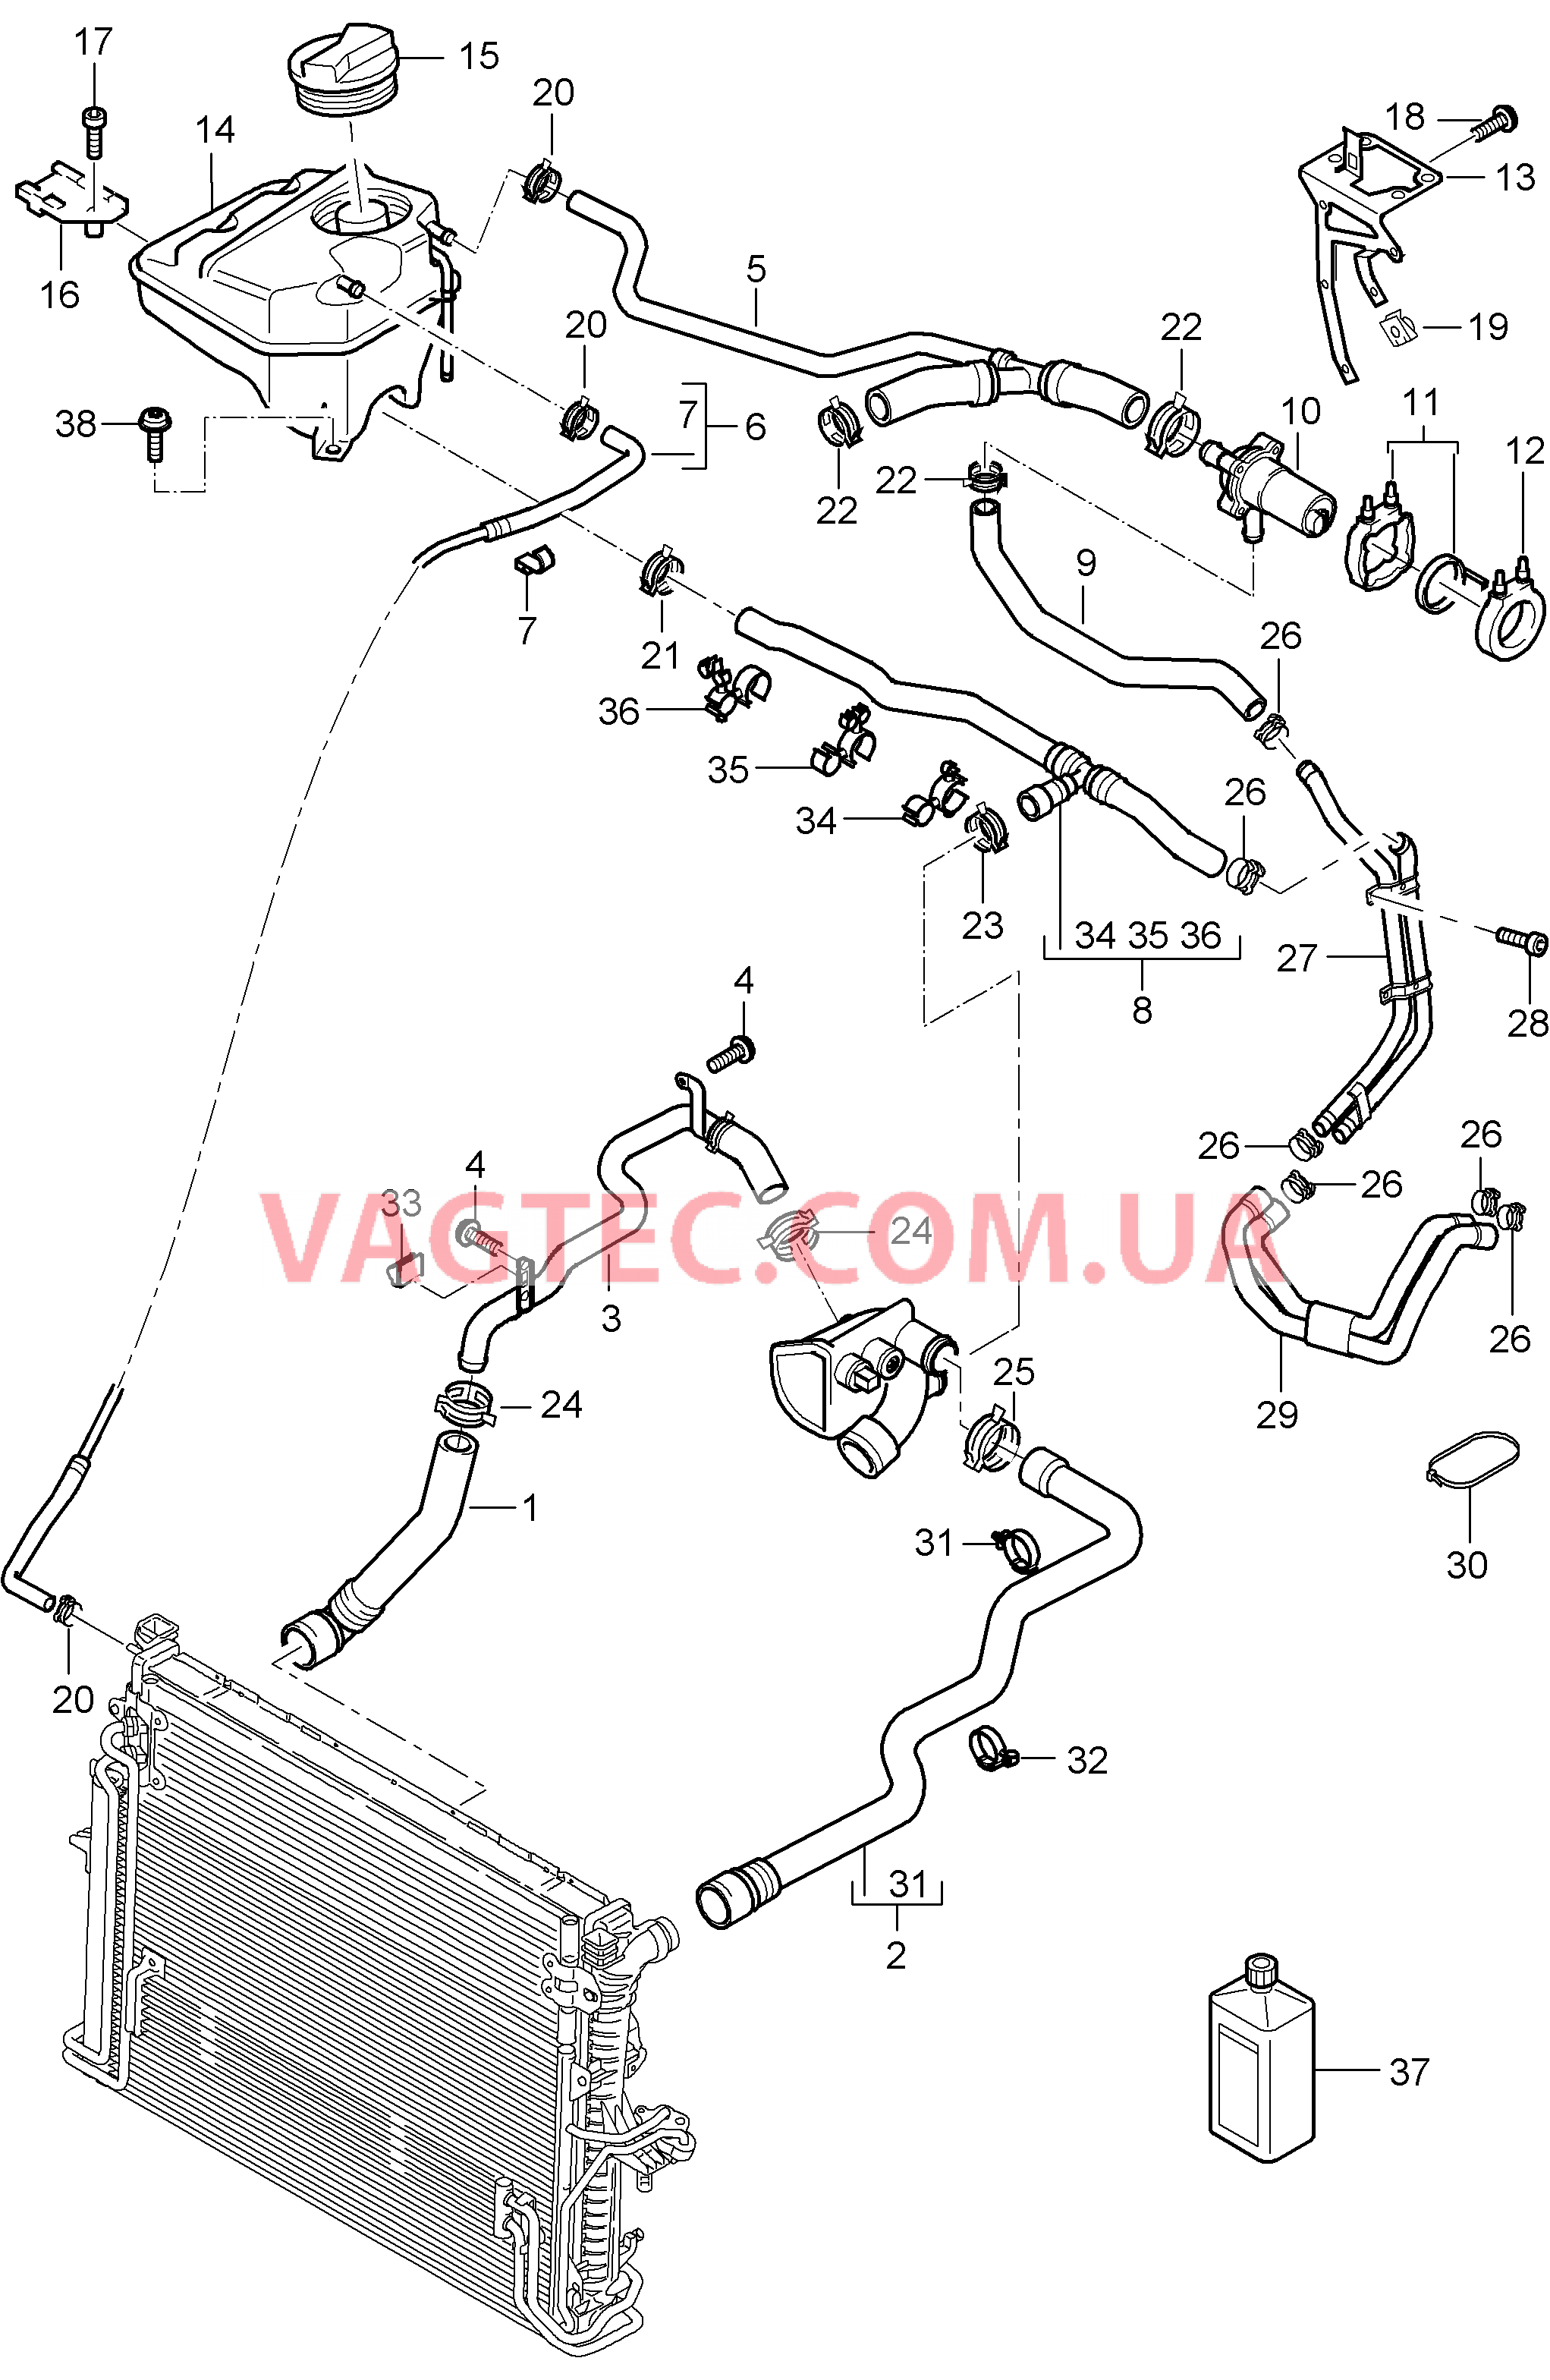 105-027 Водяное охлаждение 4, Водяной резервуар, с, Дополнительный отопитель
						
						ID9J, I7VE/7VL для PORSCHE Cayenne 2003-2006